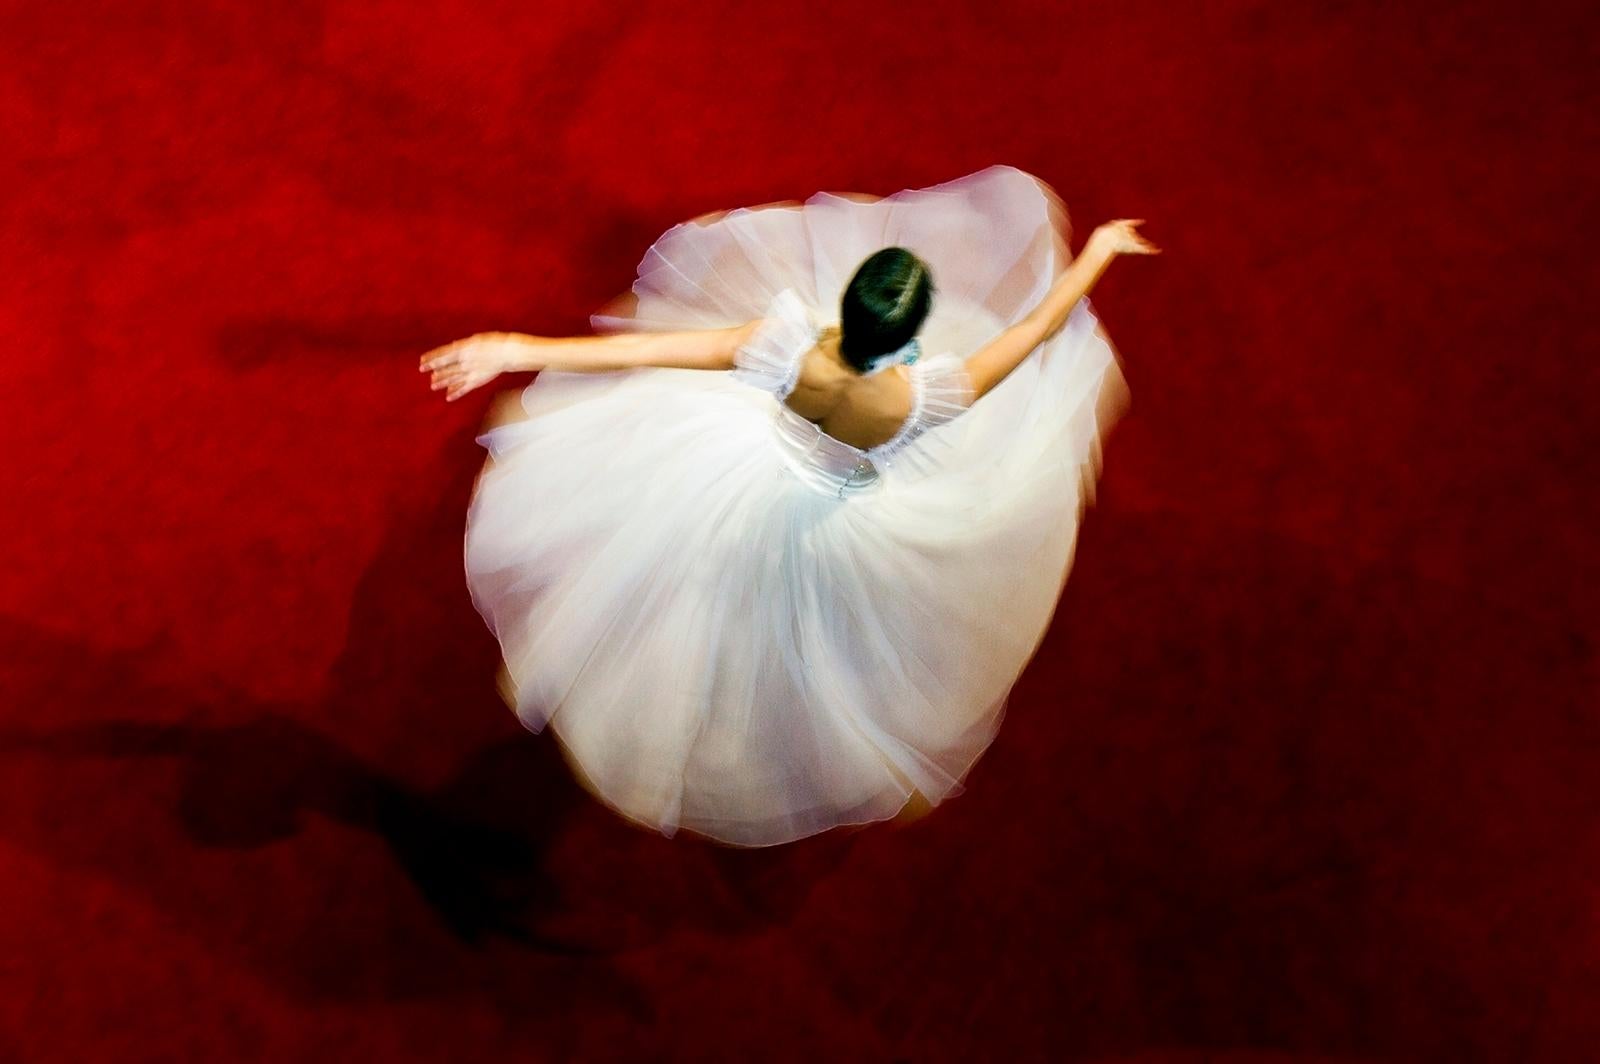 Tänzerin – kostenlose Lieferung – signierter, limitierter Kunstdruck, zeitgenössisch, Tanz, Romantik (Rot), Figurative Photograph, von Ian Sanderson